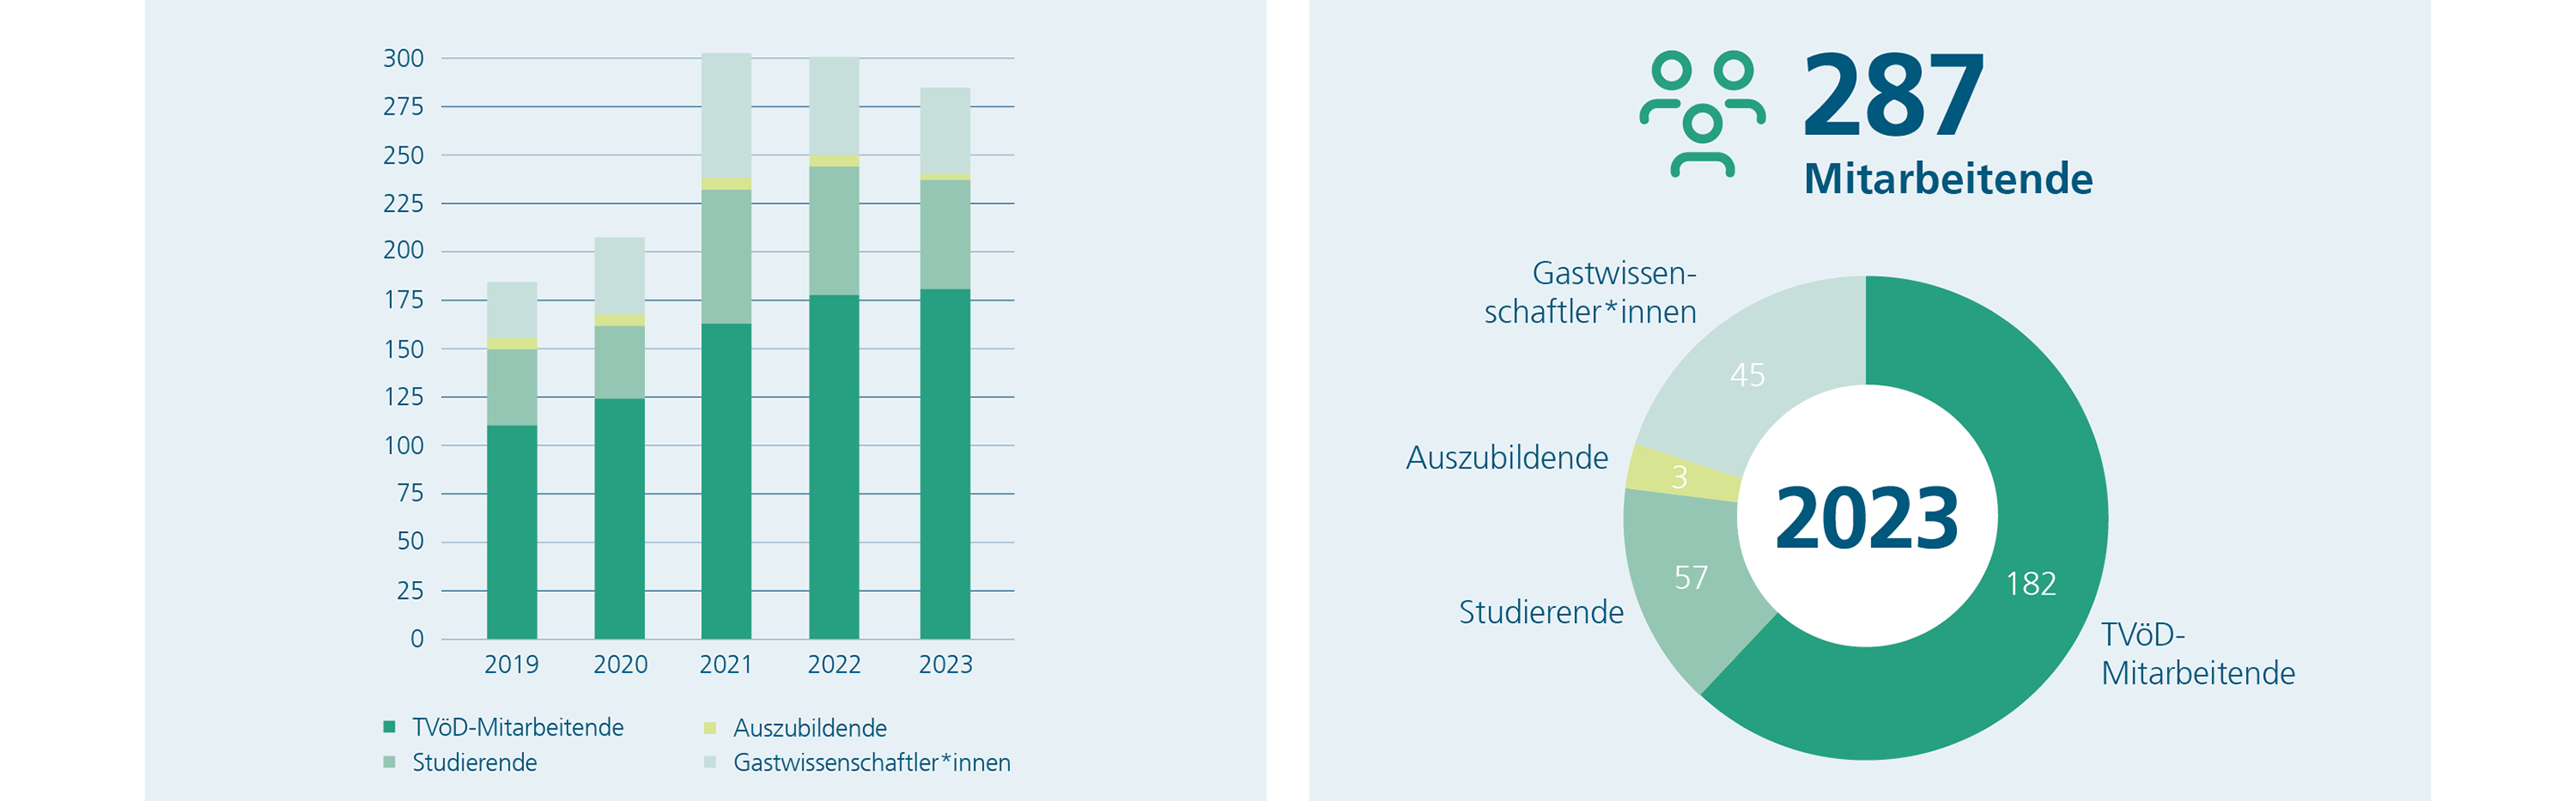 Peronalentwicklung am Fraunhofer IST 2019-2023 sowie die Personalstruktur im Jahr 2023